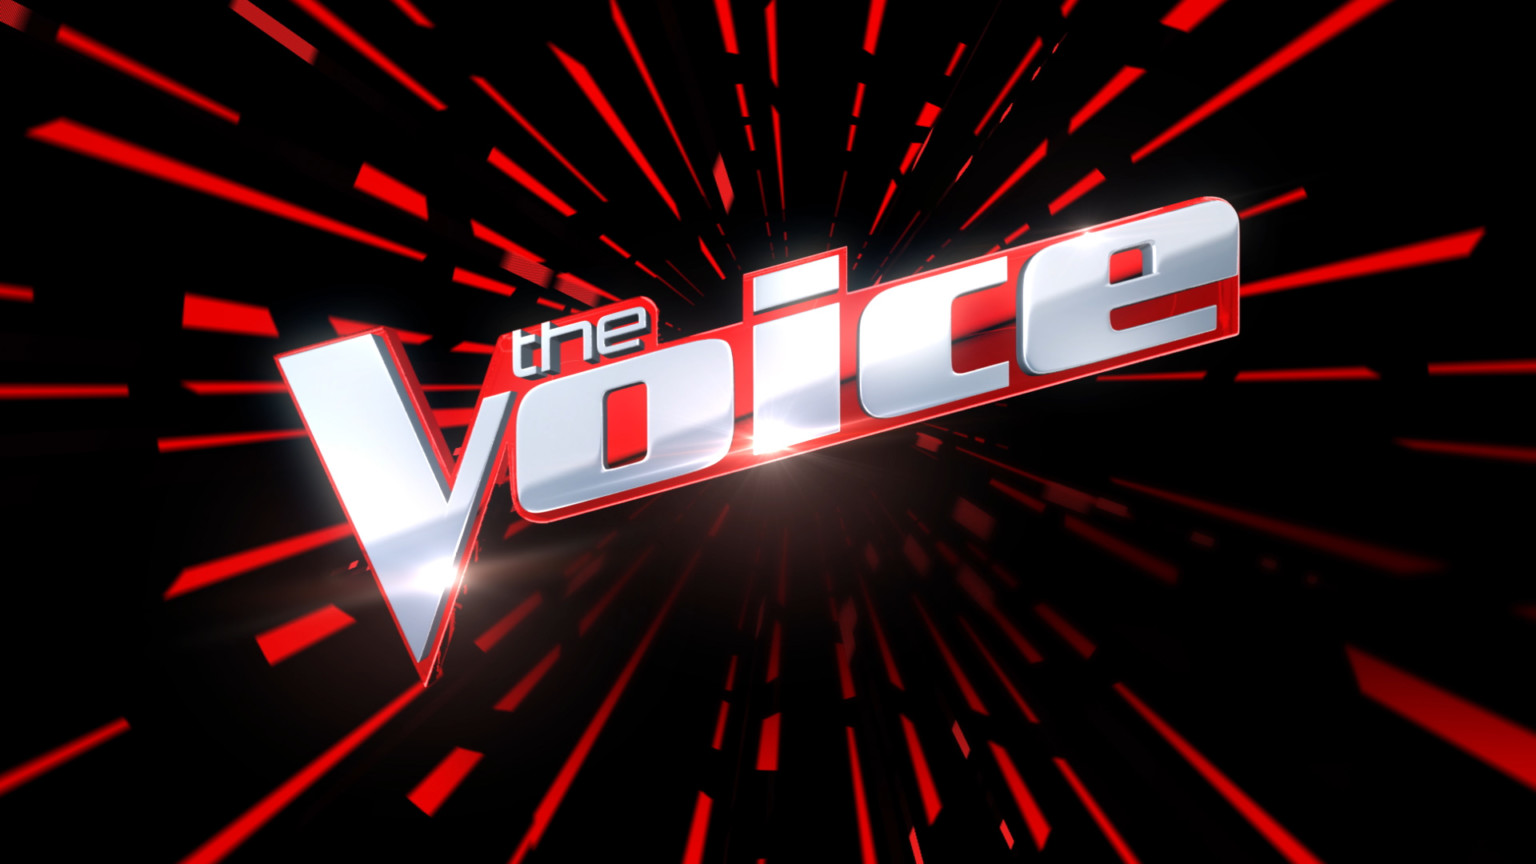 village voice returns its very voicey